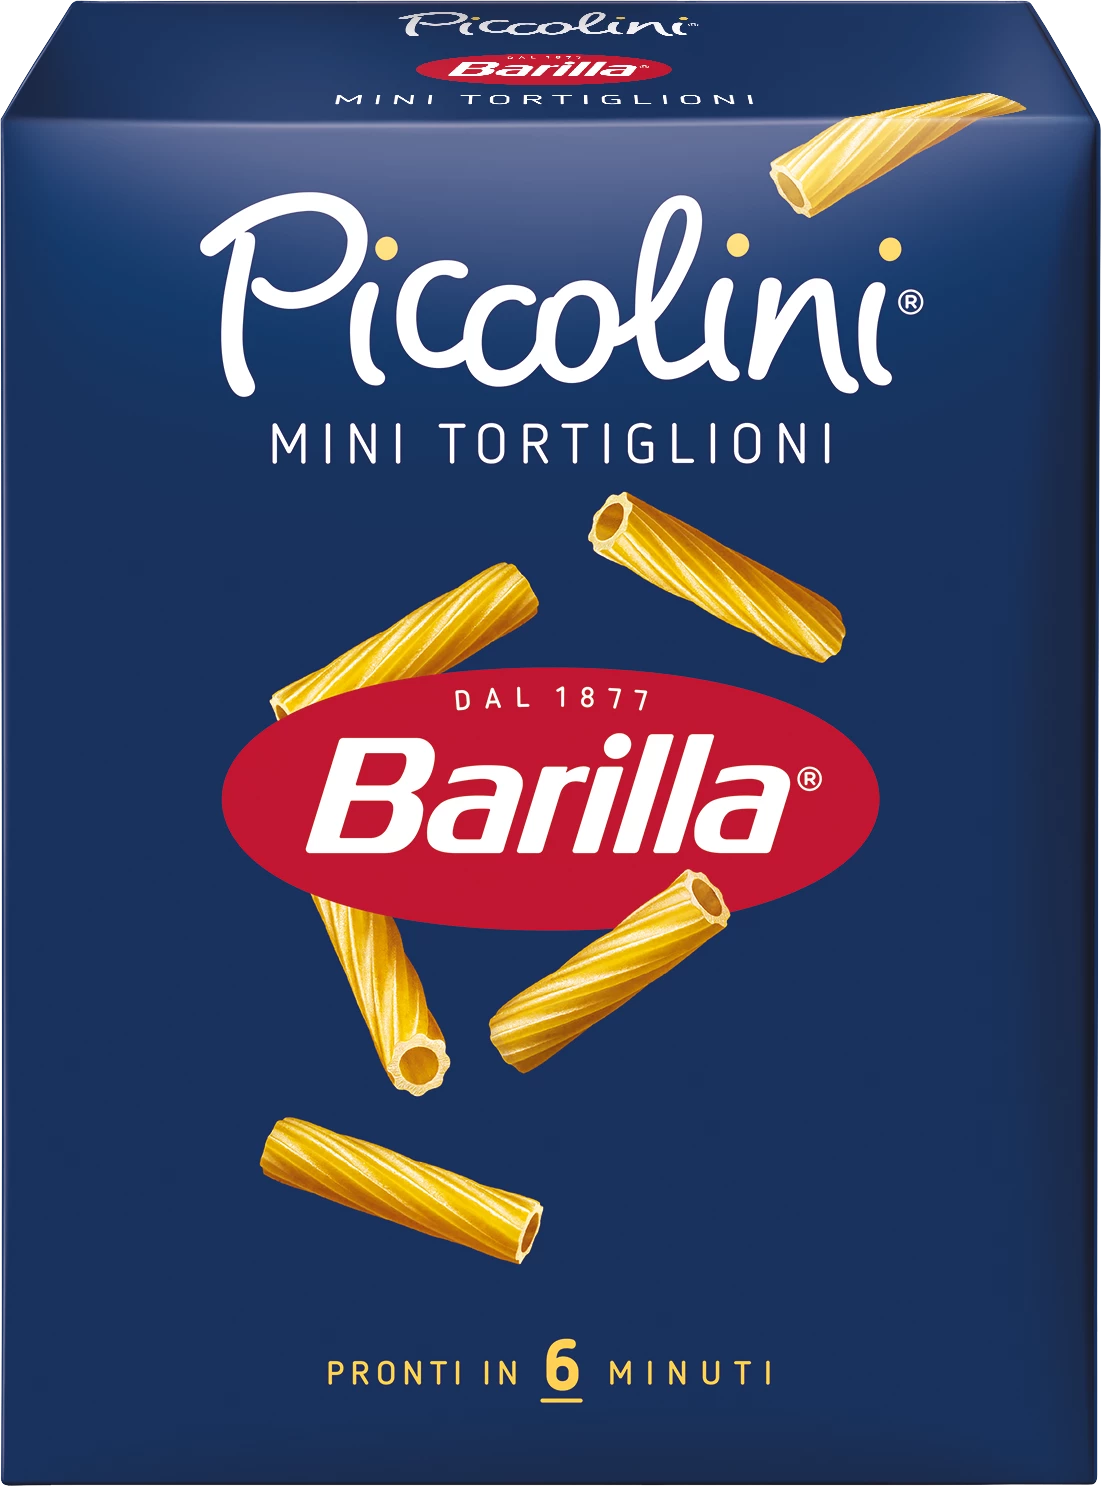 迷你 Tortiglioni 意大利面，500g - BARRILa